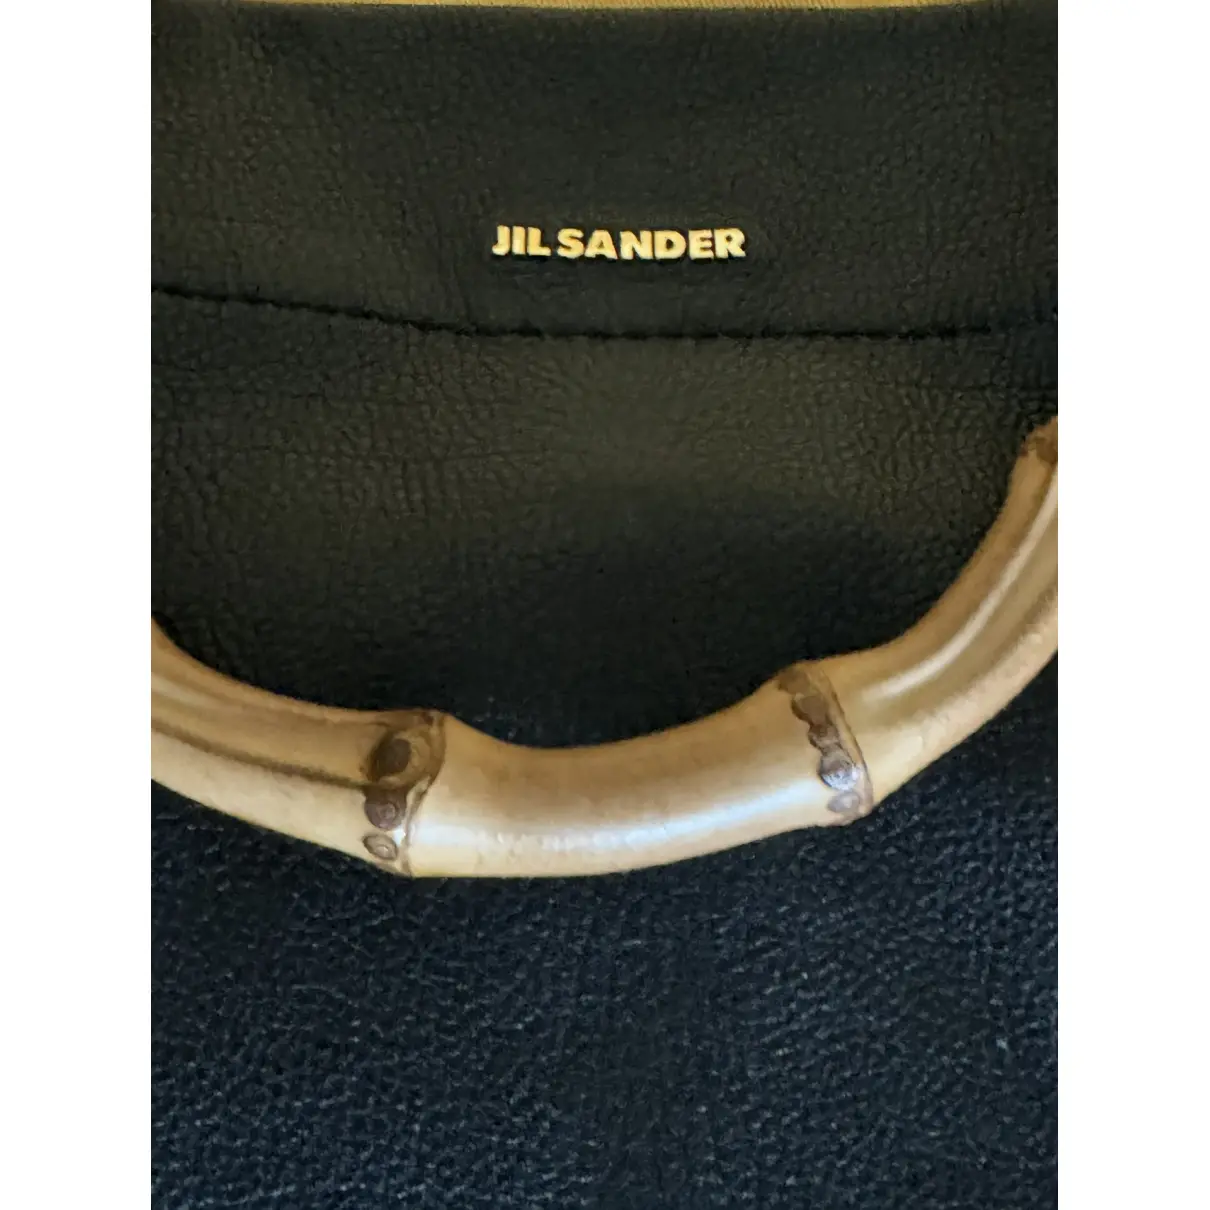 Buy Jil Sander Leather tote online